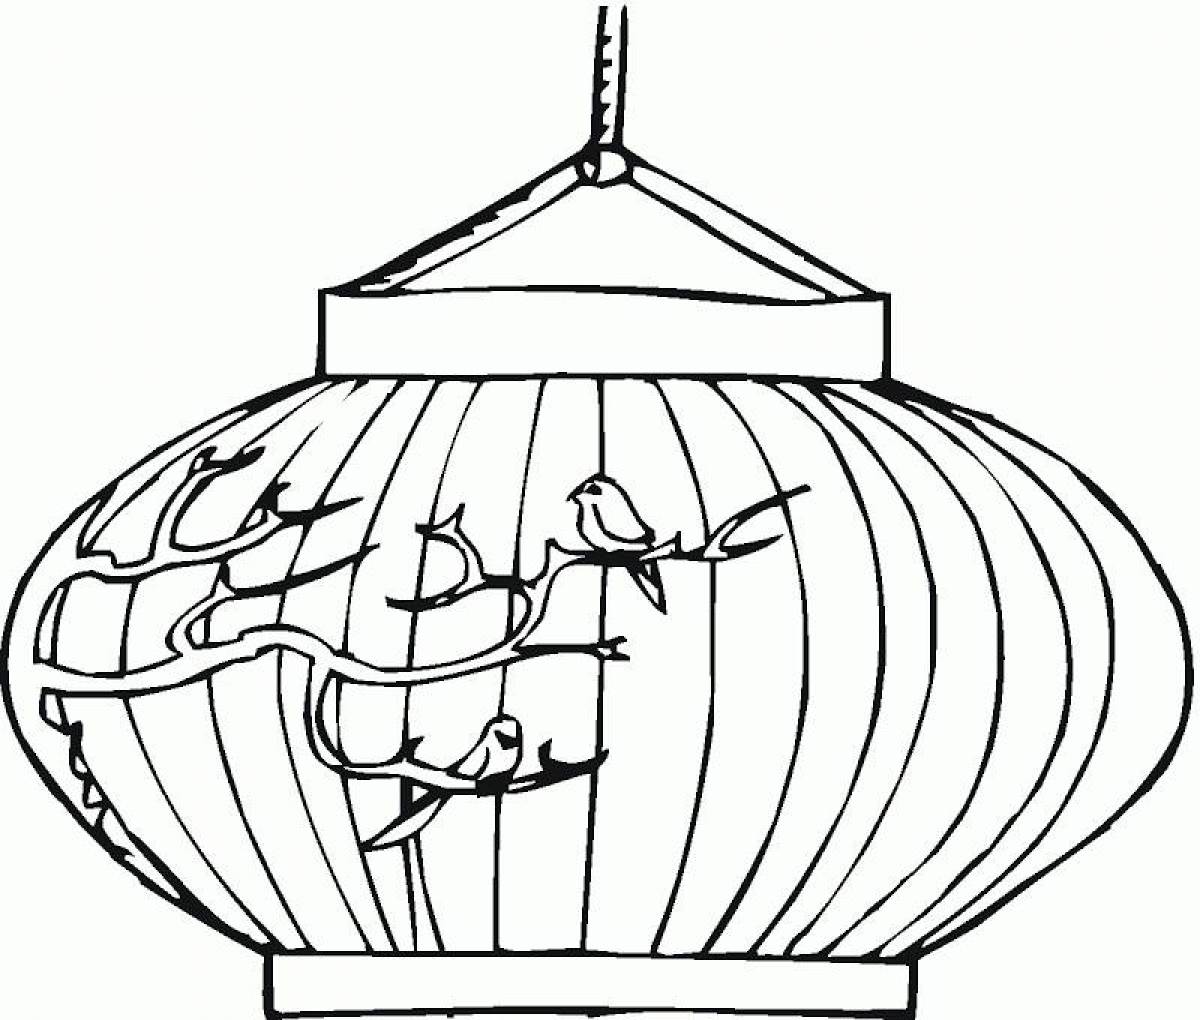 Китайский фонарик